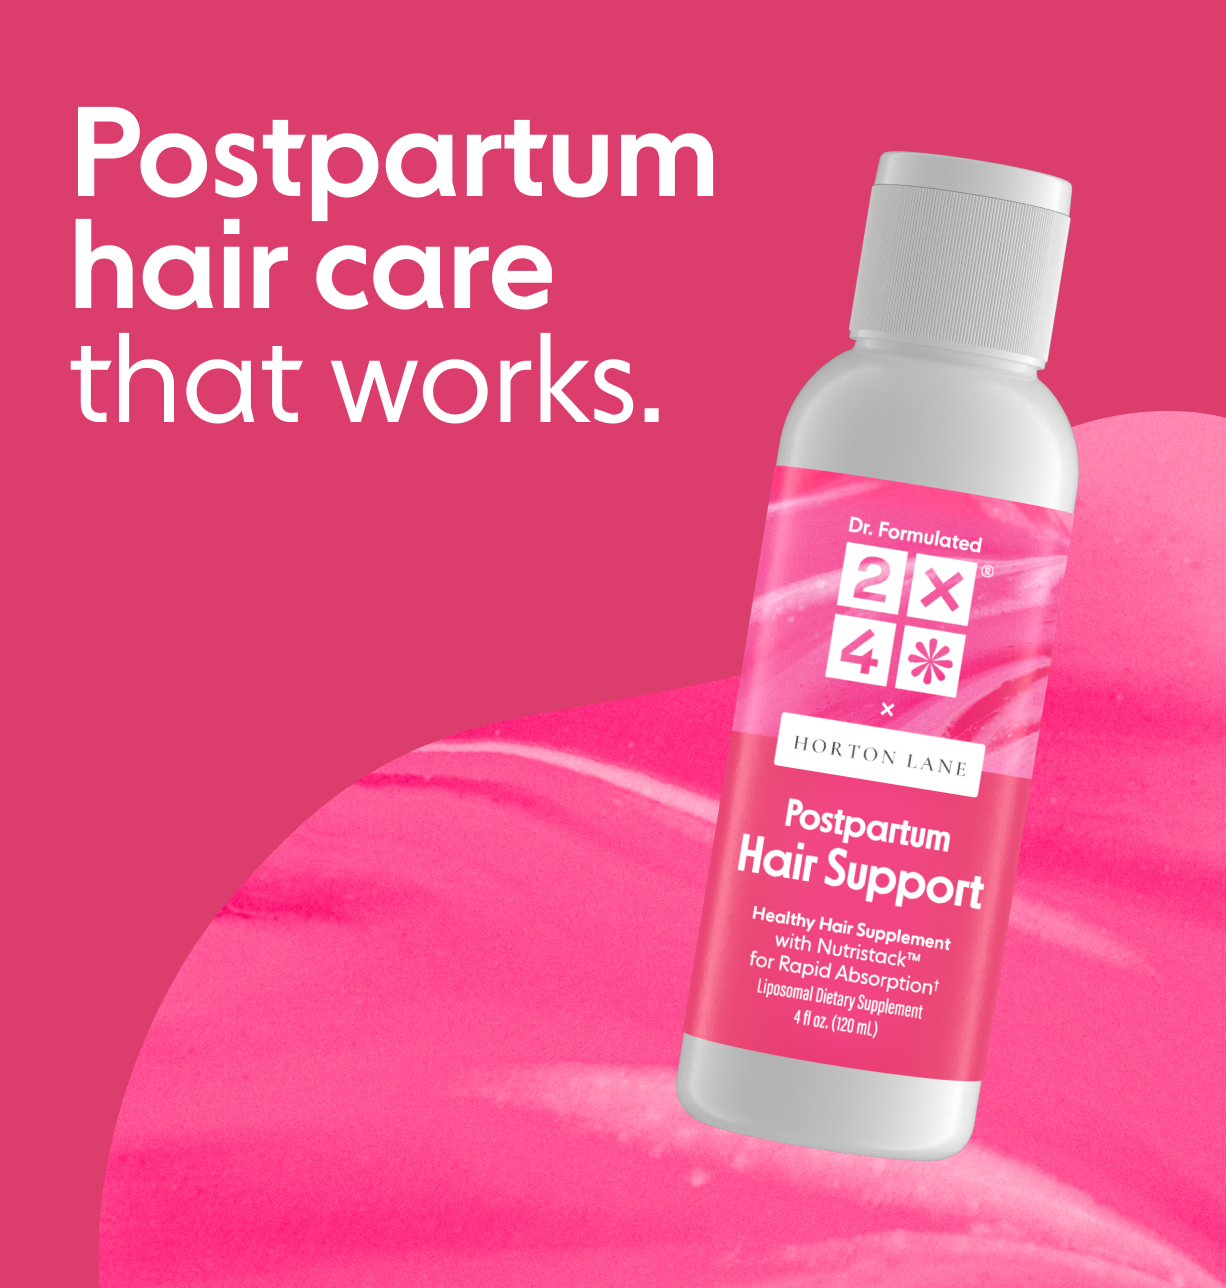 2x4 Postpartum Hair Support